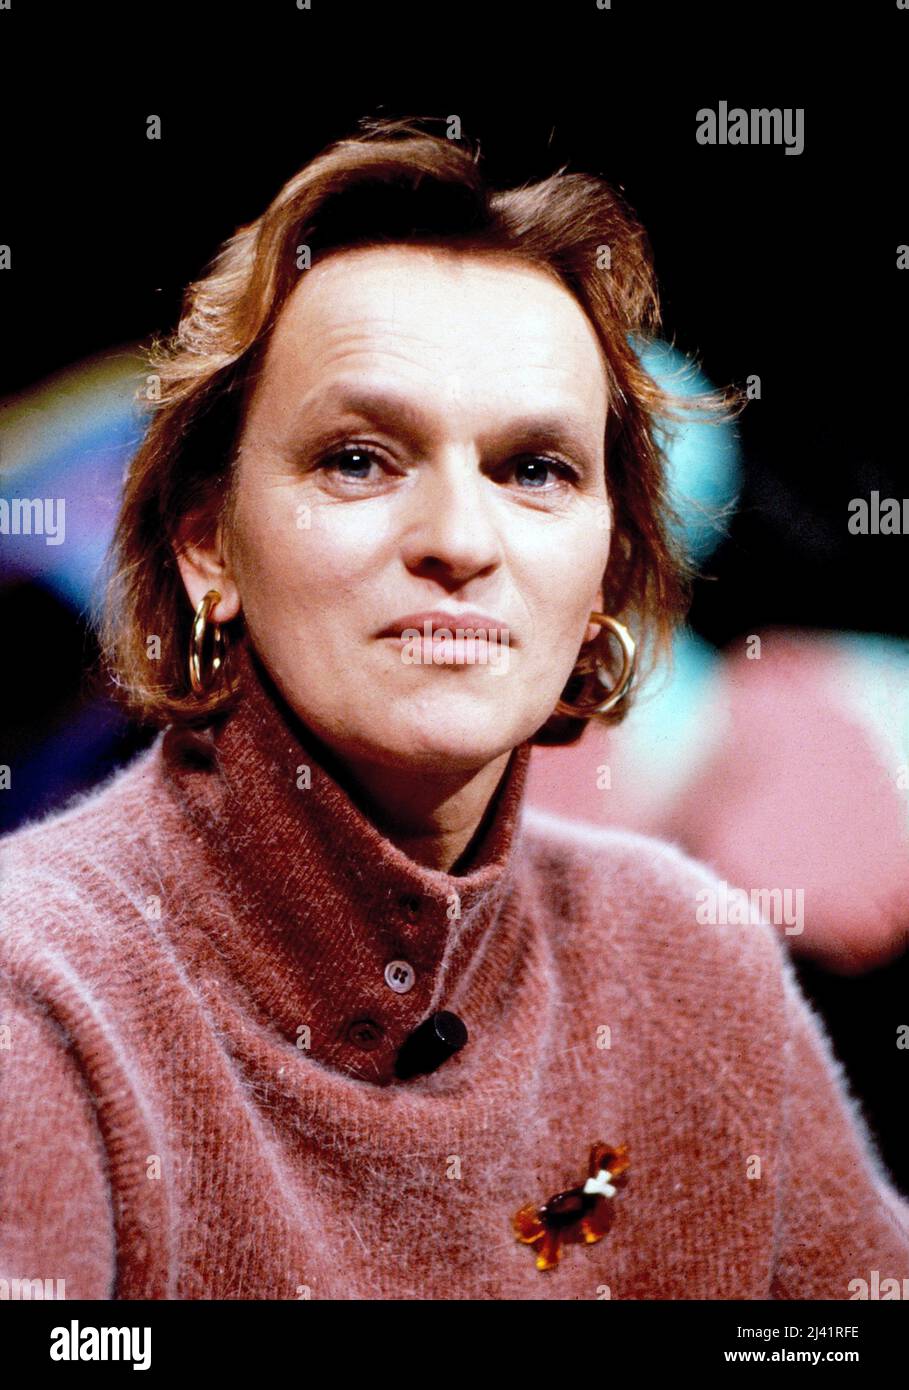 Elke Heidenreich, deutsche Schriftstellerin und Literaturkritikerin, als Gast in einer Talkshow, Deutschland um 2000. Stock Photo